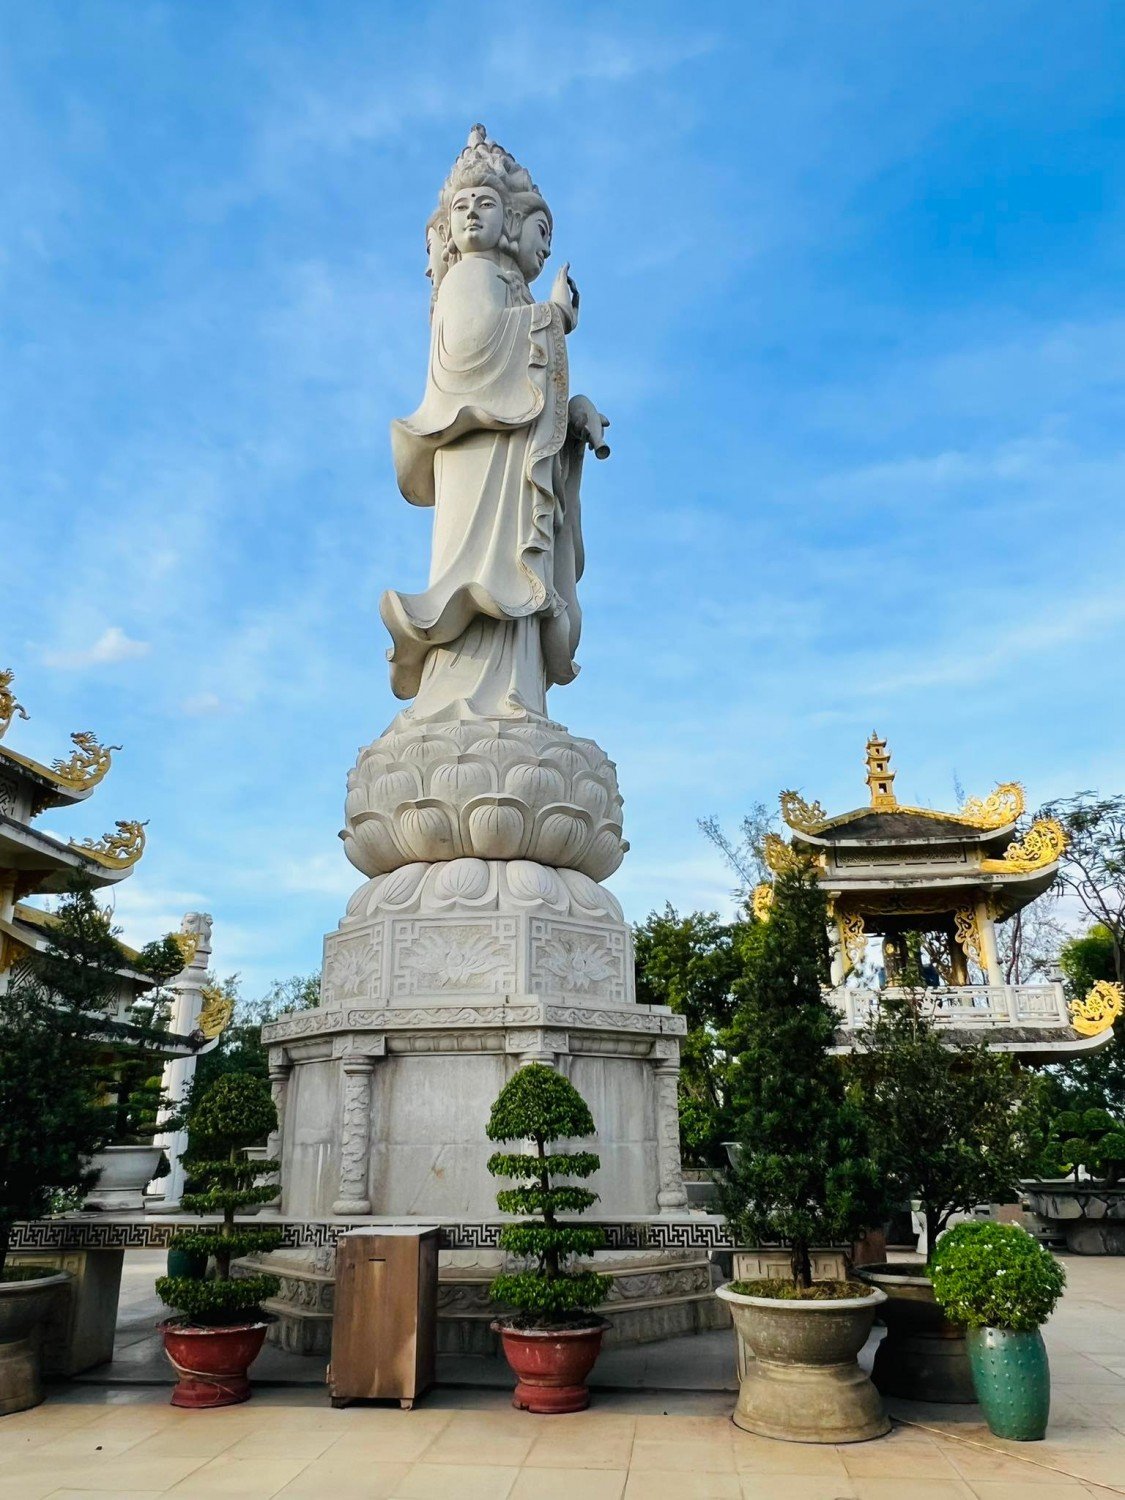 Tượng Phật Quan Thế Âm Bồ Tát (Tứ diện Ngũ phương) bằng đá trắng nguyên khối (chiều cao 19m, nặng 480 tấn) đạt Kỷ lục Guinness Việt Nam